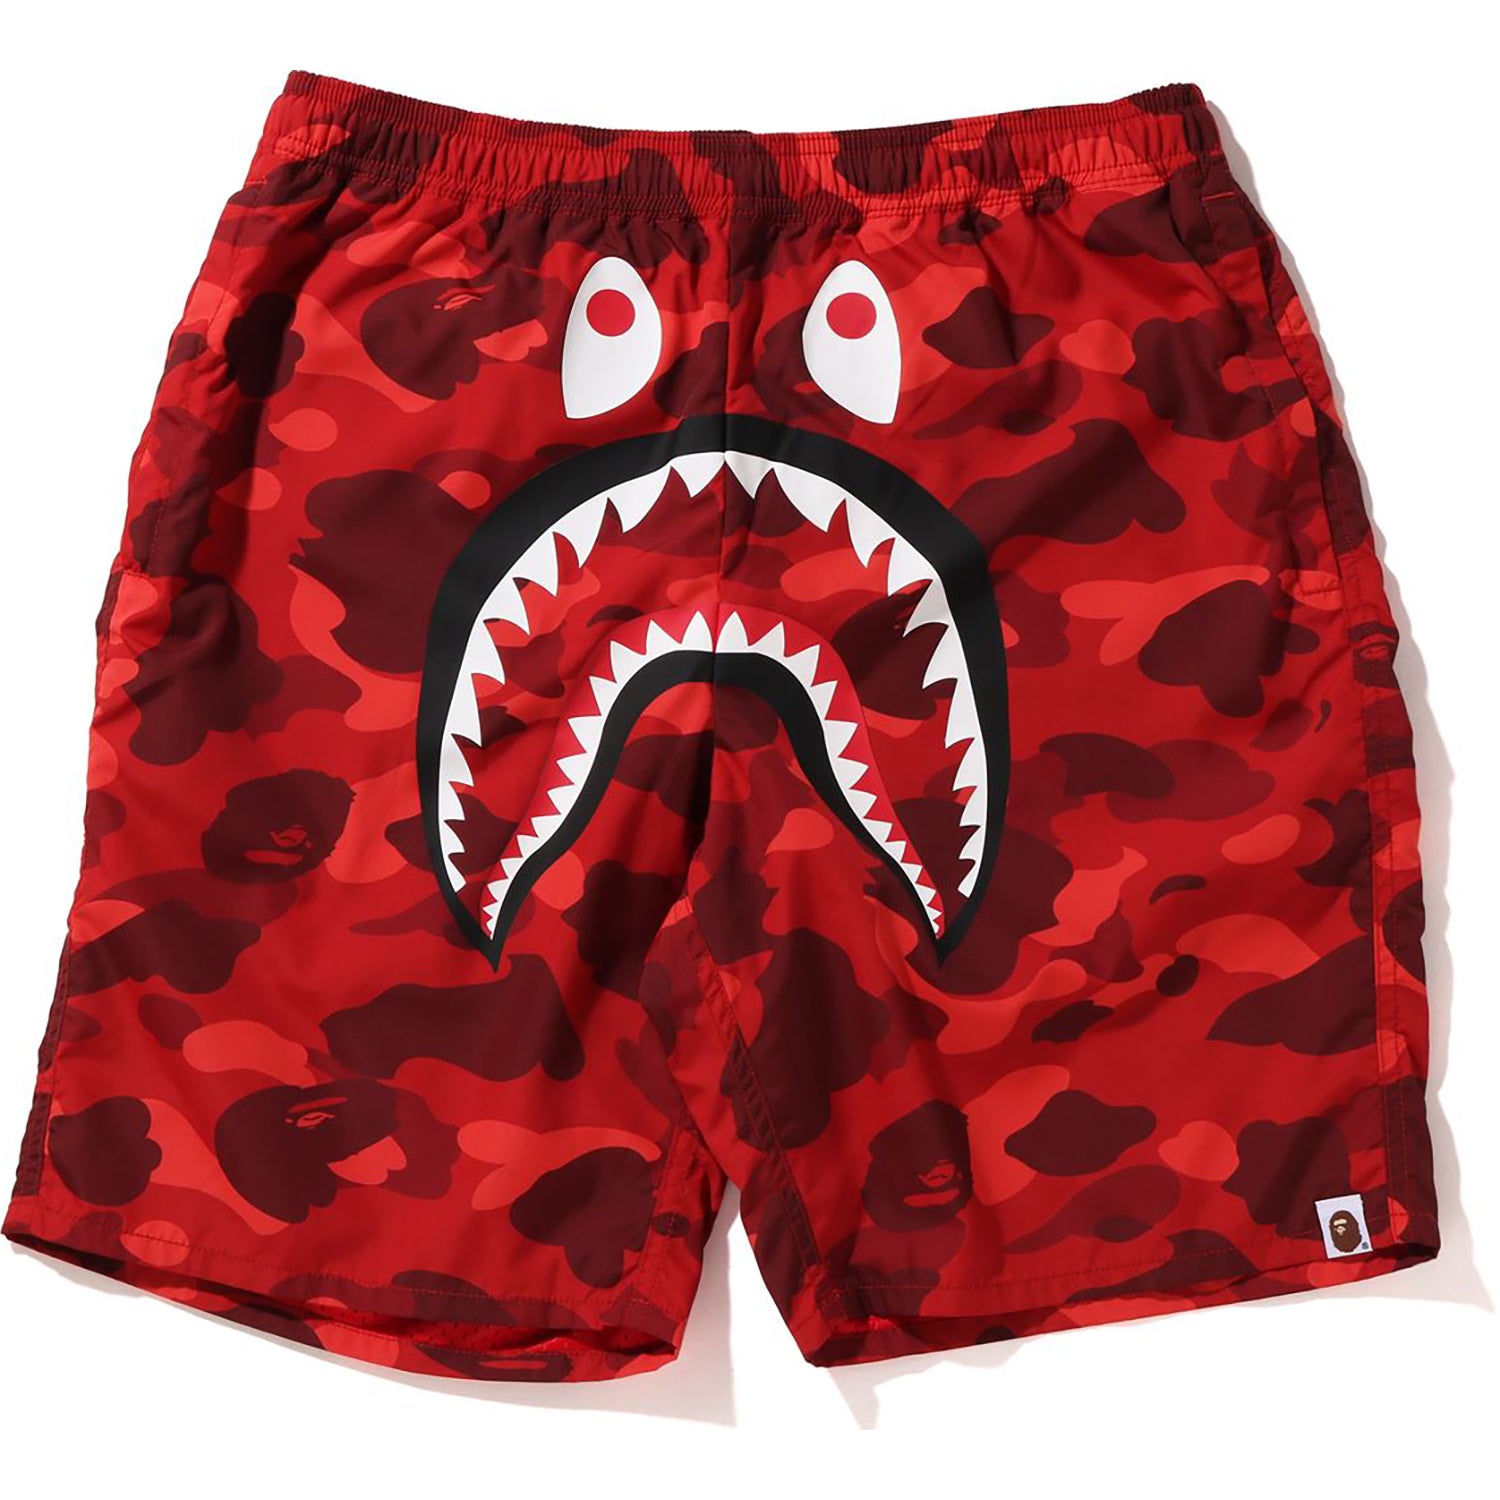 Color Camo Shark Beach Shorts Mens 1I30-153-016 / Navy / S